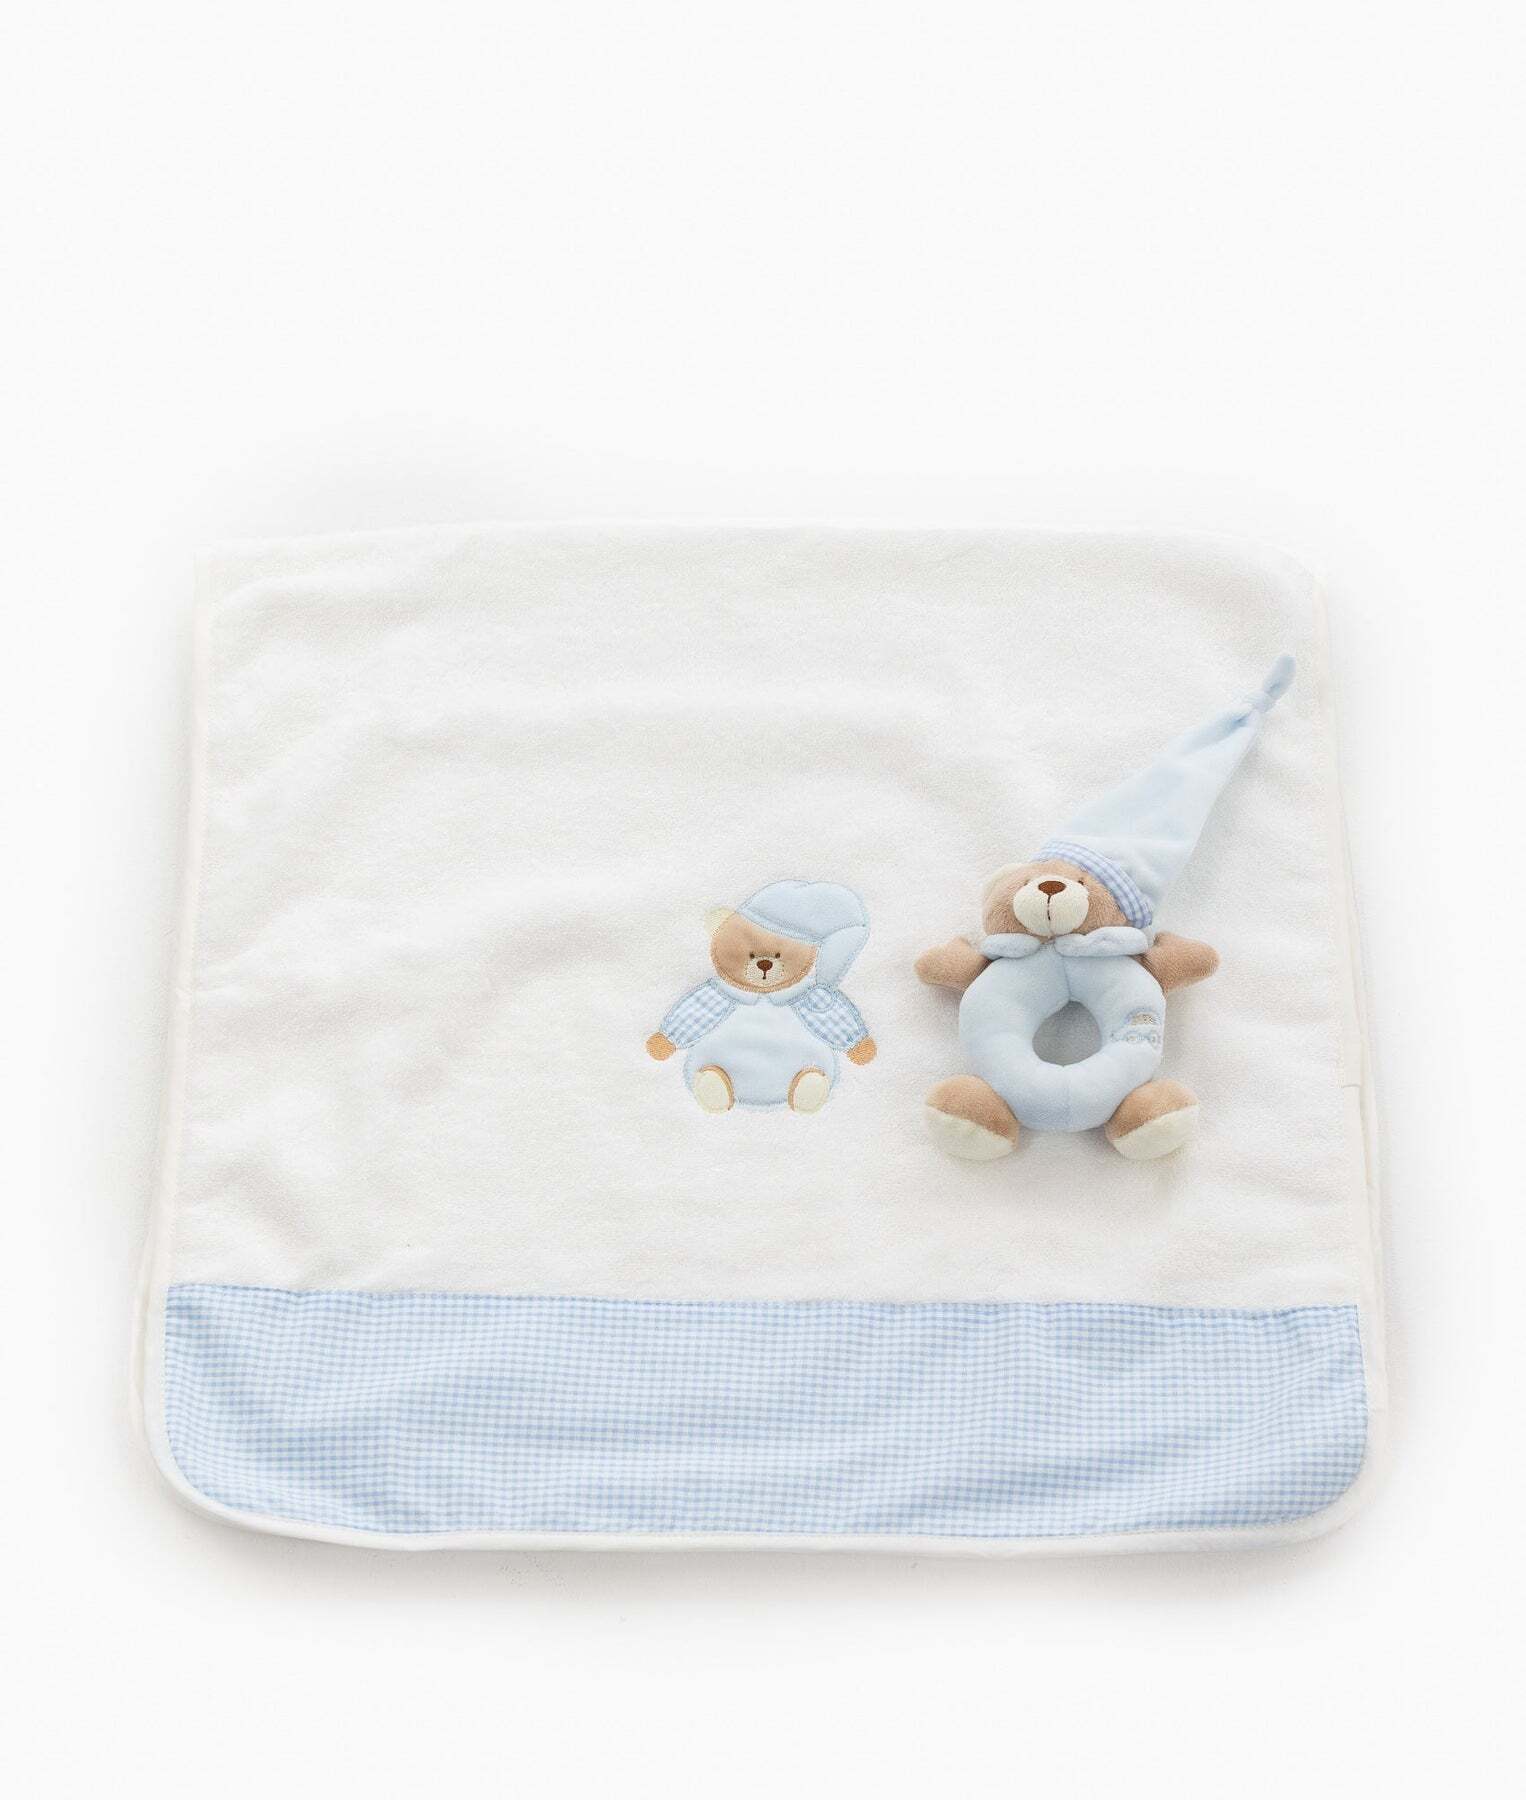 bear-towel-rattle-set-blue-674_1800x1800